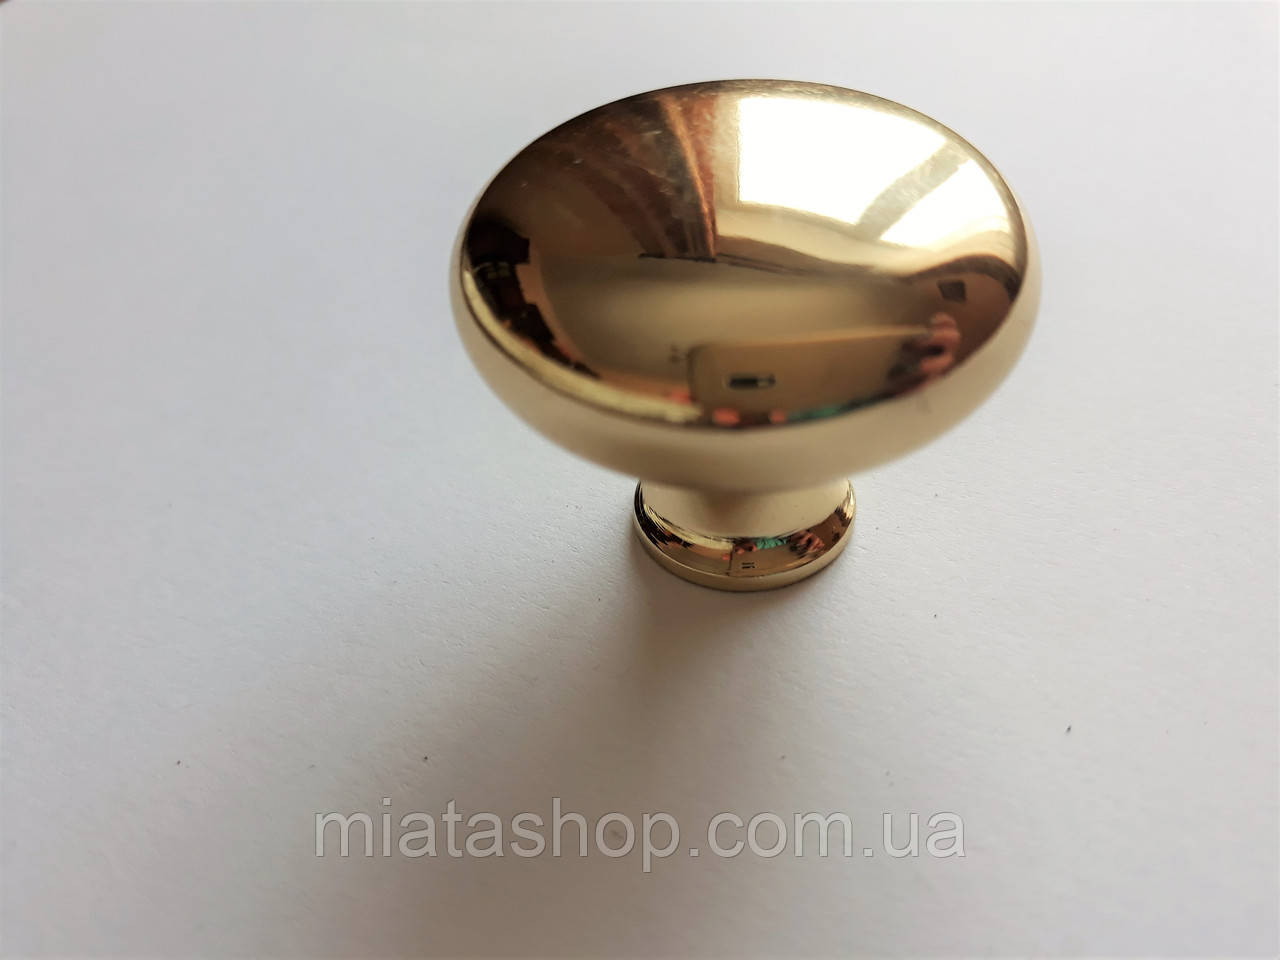 Мебельная ручка кнопка Belwith , круглая, золото: продажа, цена в .